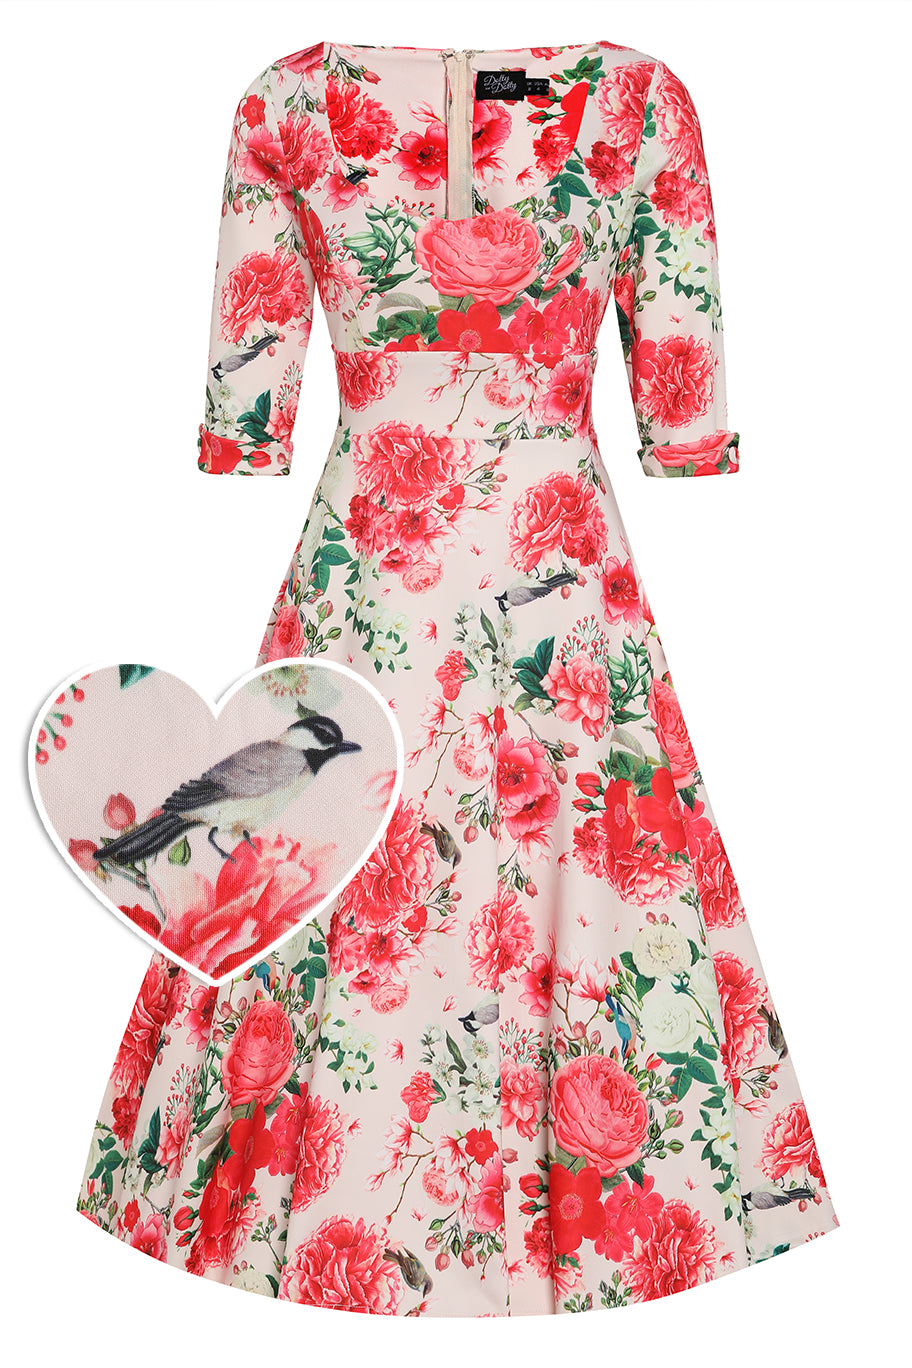 Scarlette Pink Floral Mid Calf Dress